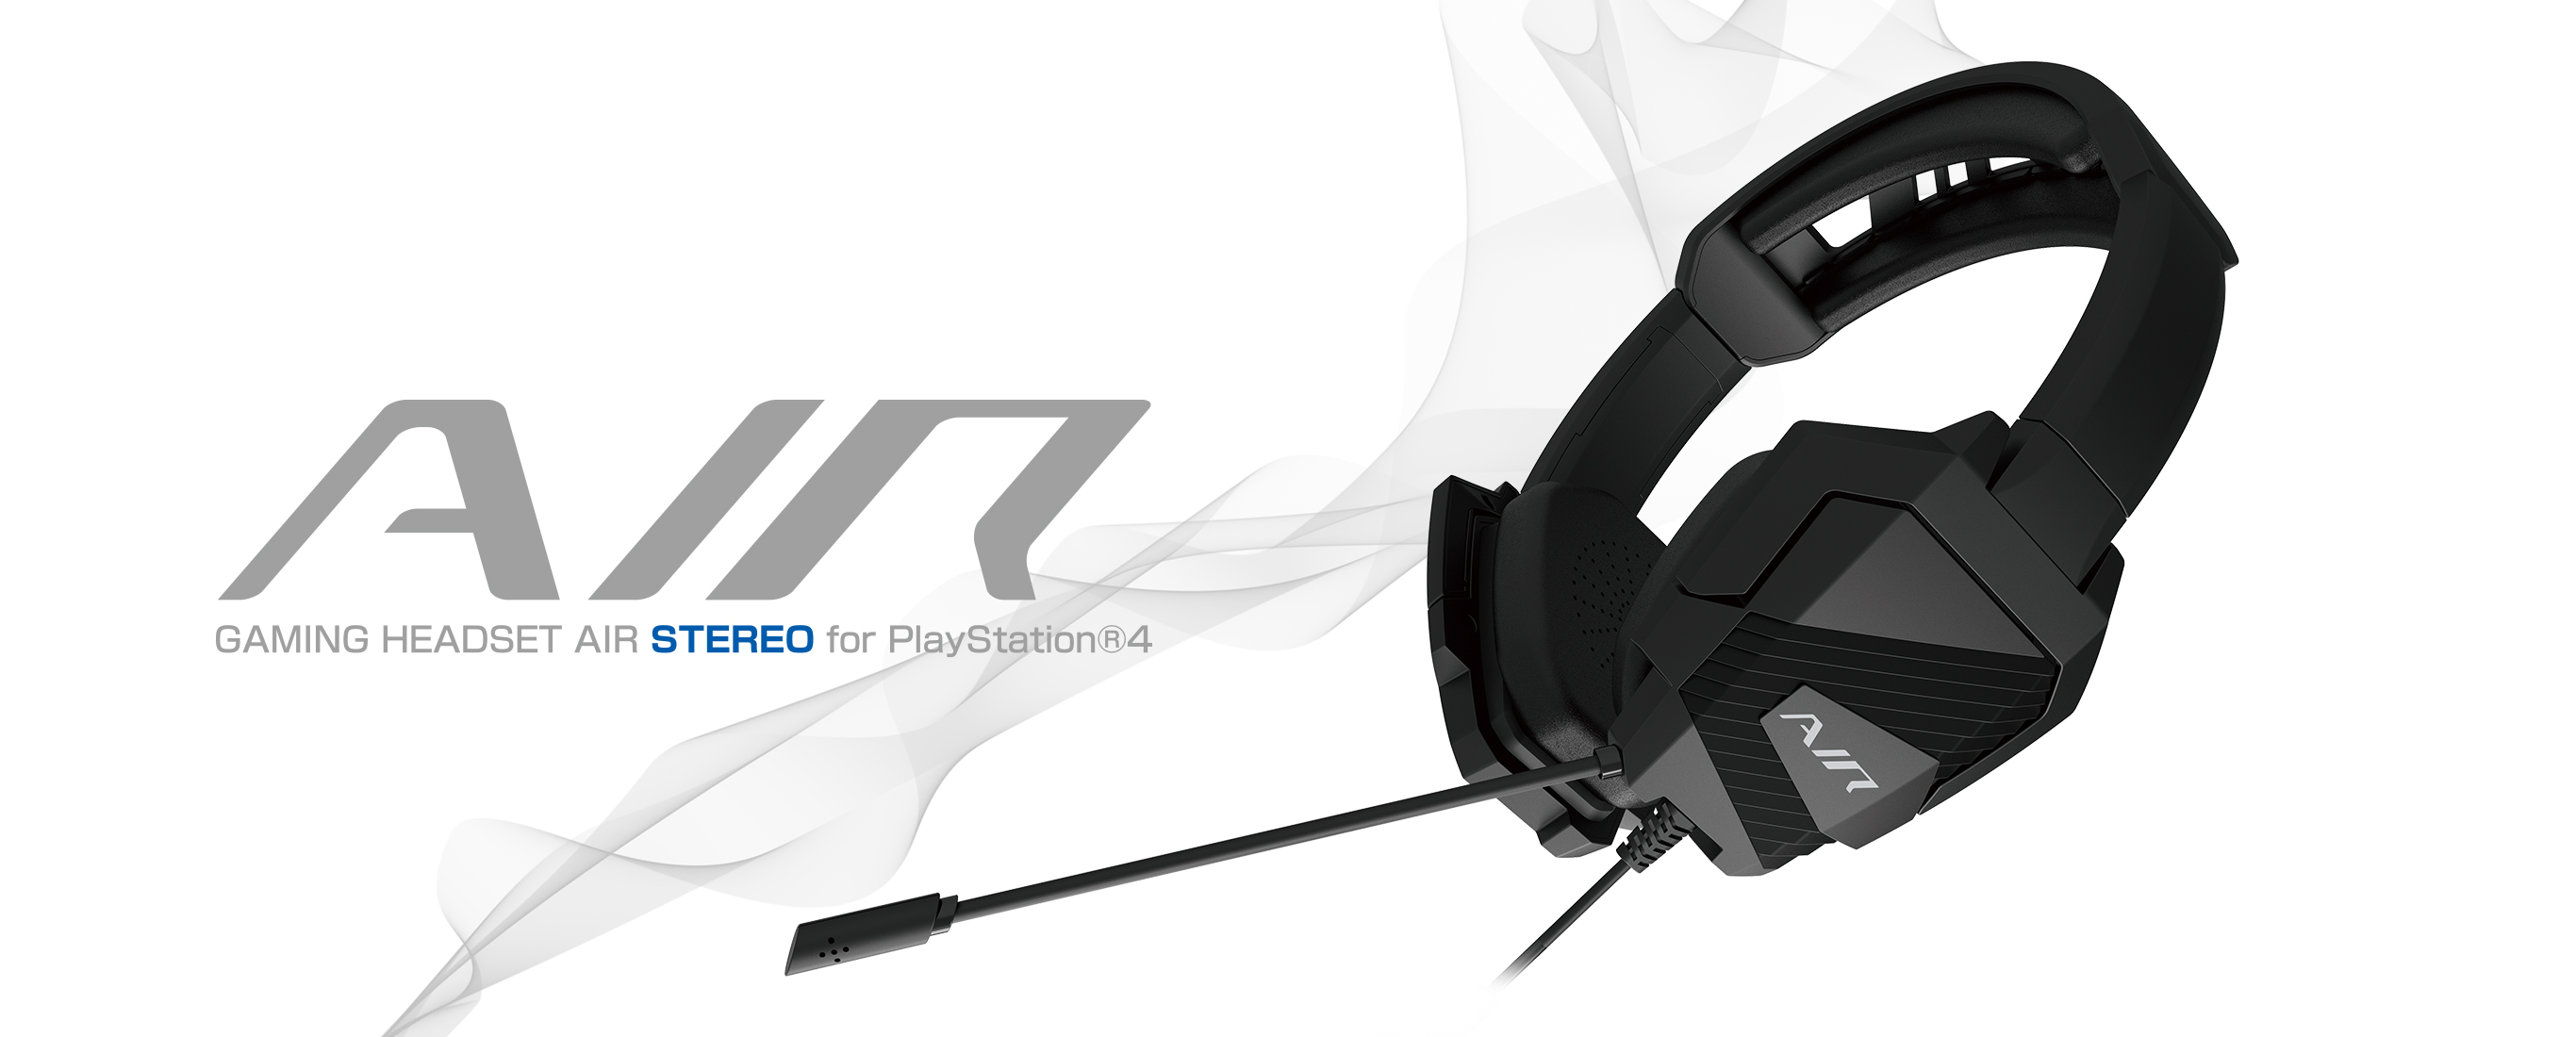 株式会社 HORI | ゲーミングヘッドセットAIR STEREO for PlayStation®4 BLACK